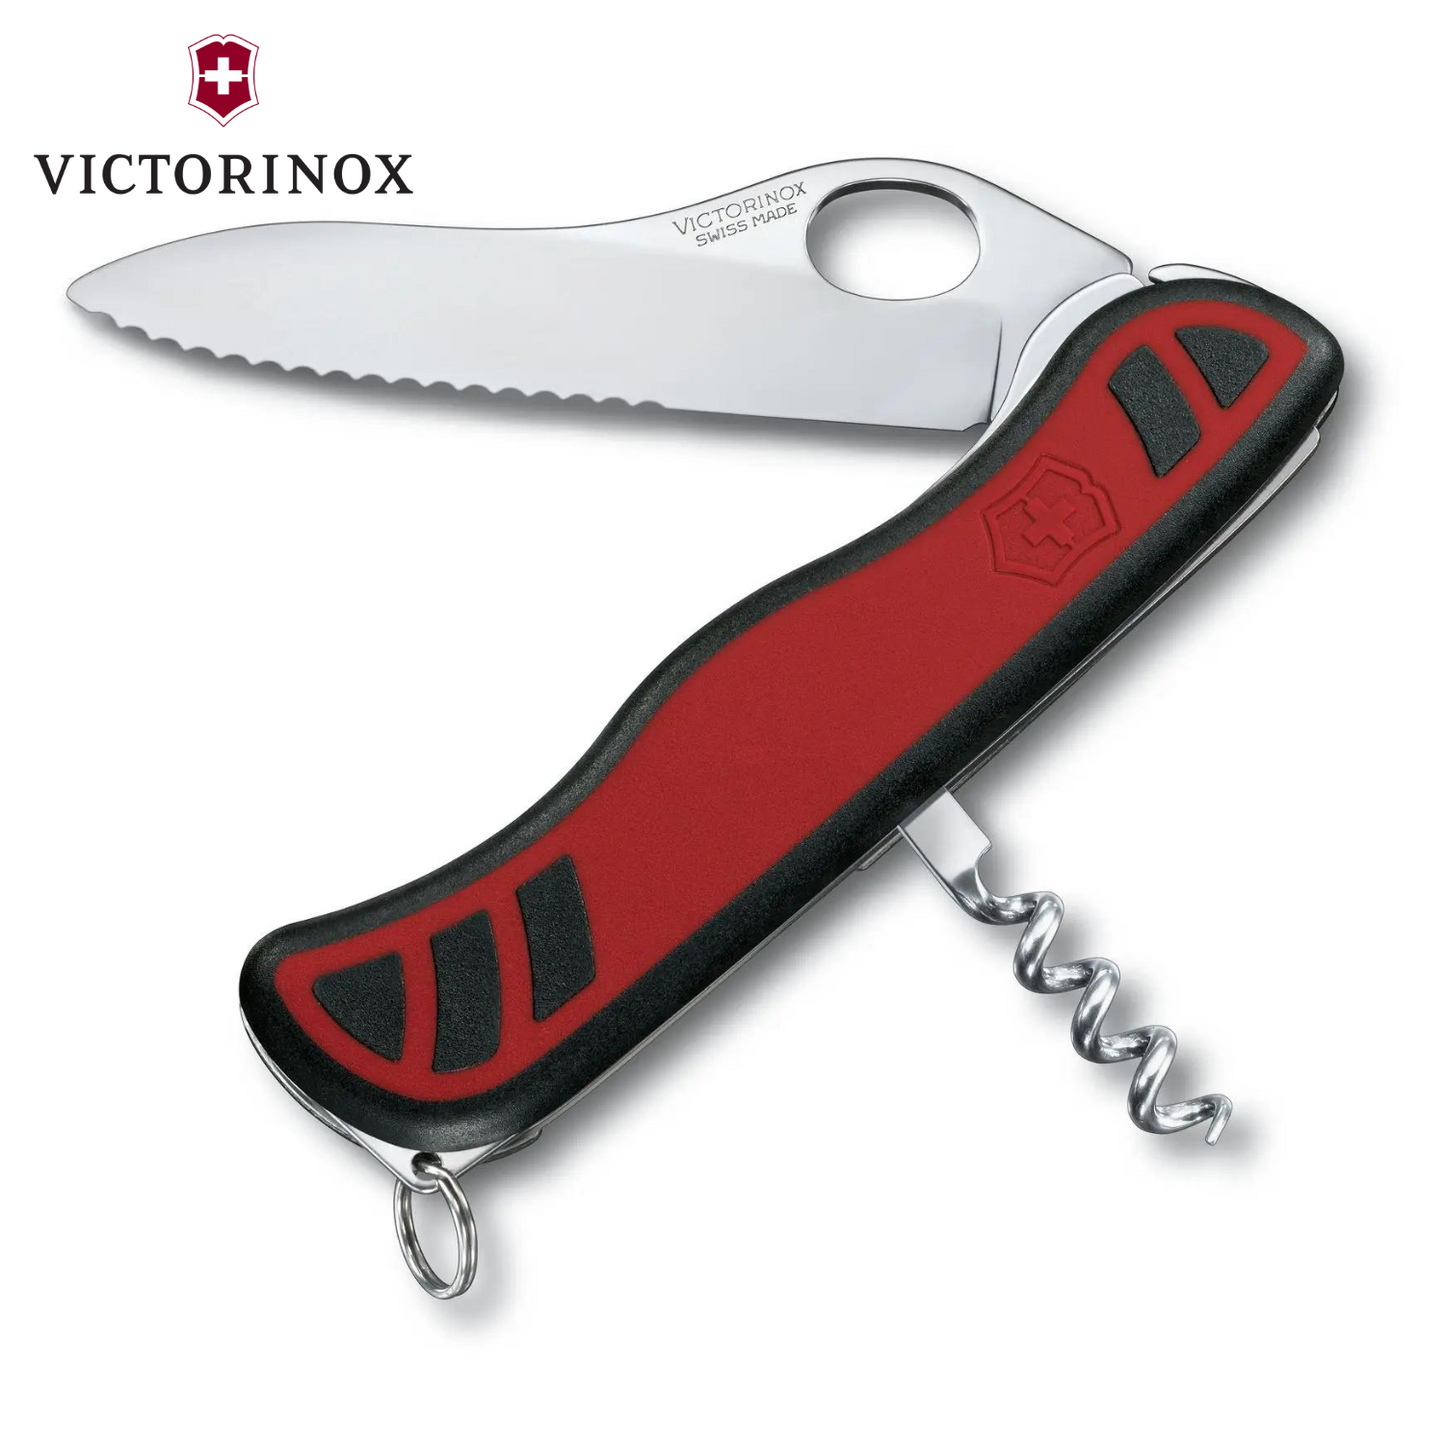 Victorinox Alpineer Grip 高海拔的專業工具 [V54]